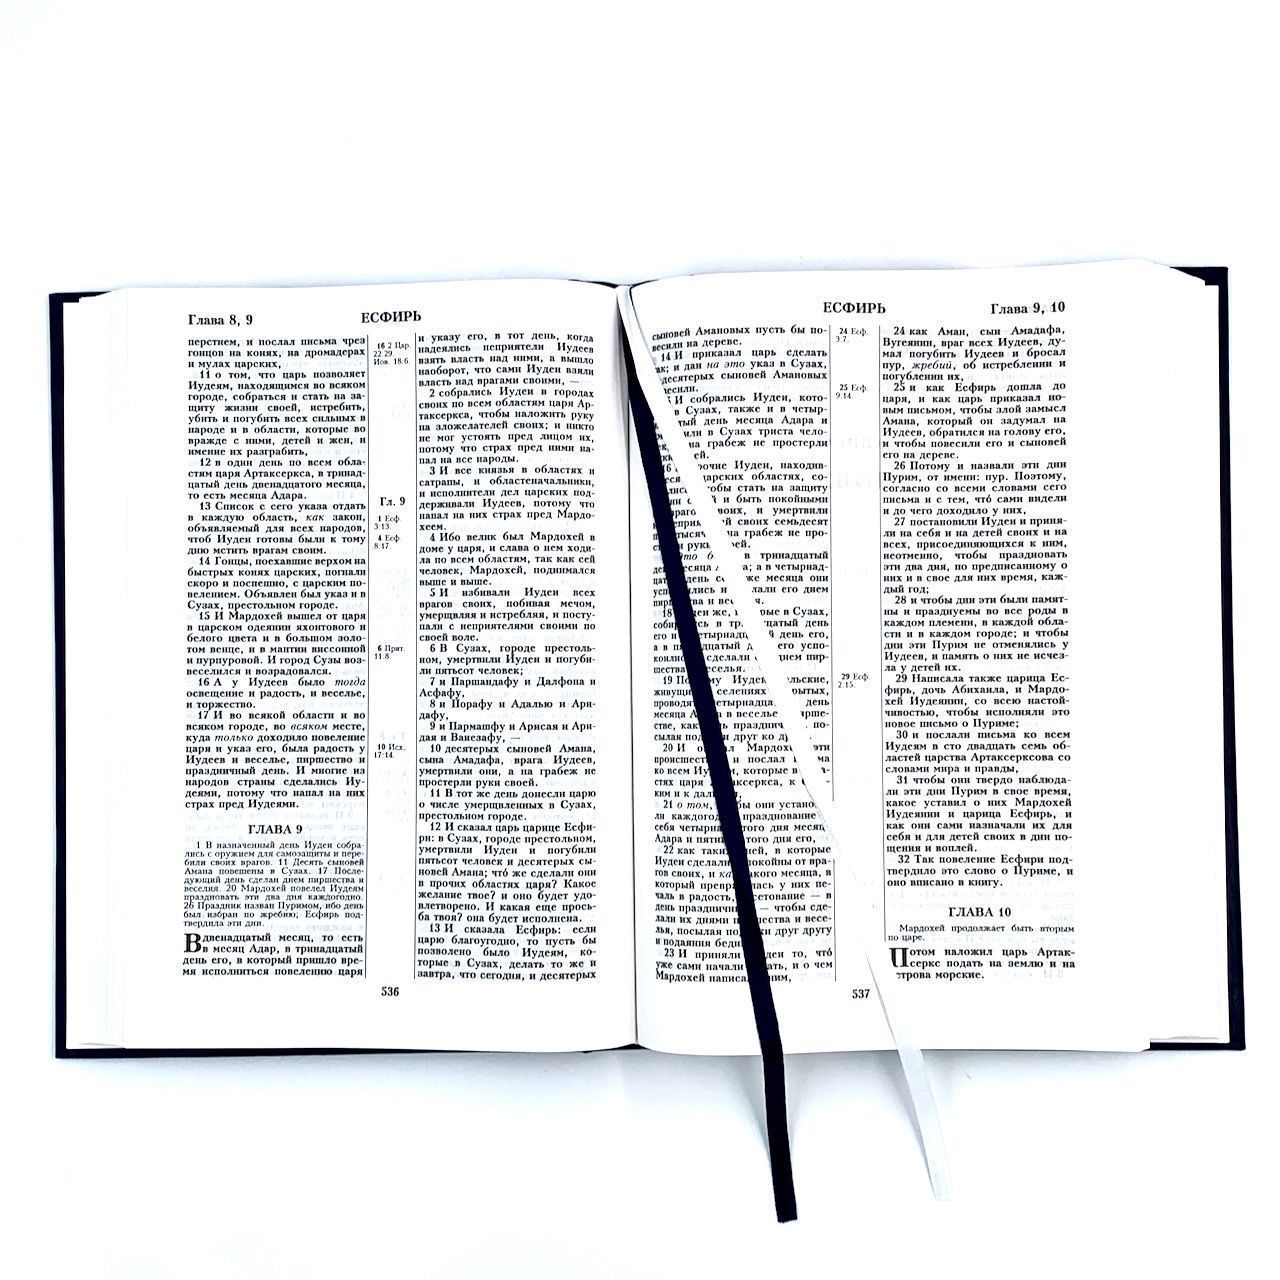 Библия 076 код 23076-3,  надпись "Библия" твердый переплет,  цвет темно-синий, размер 170x240 мм